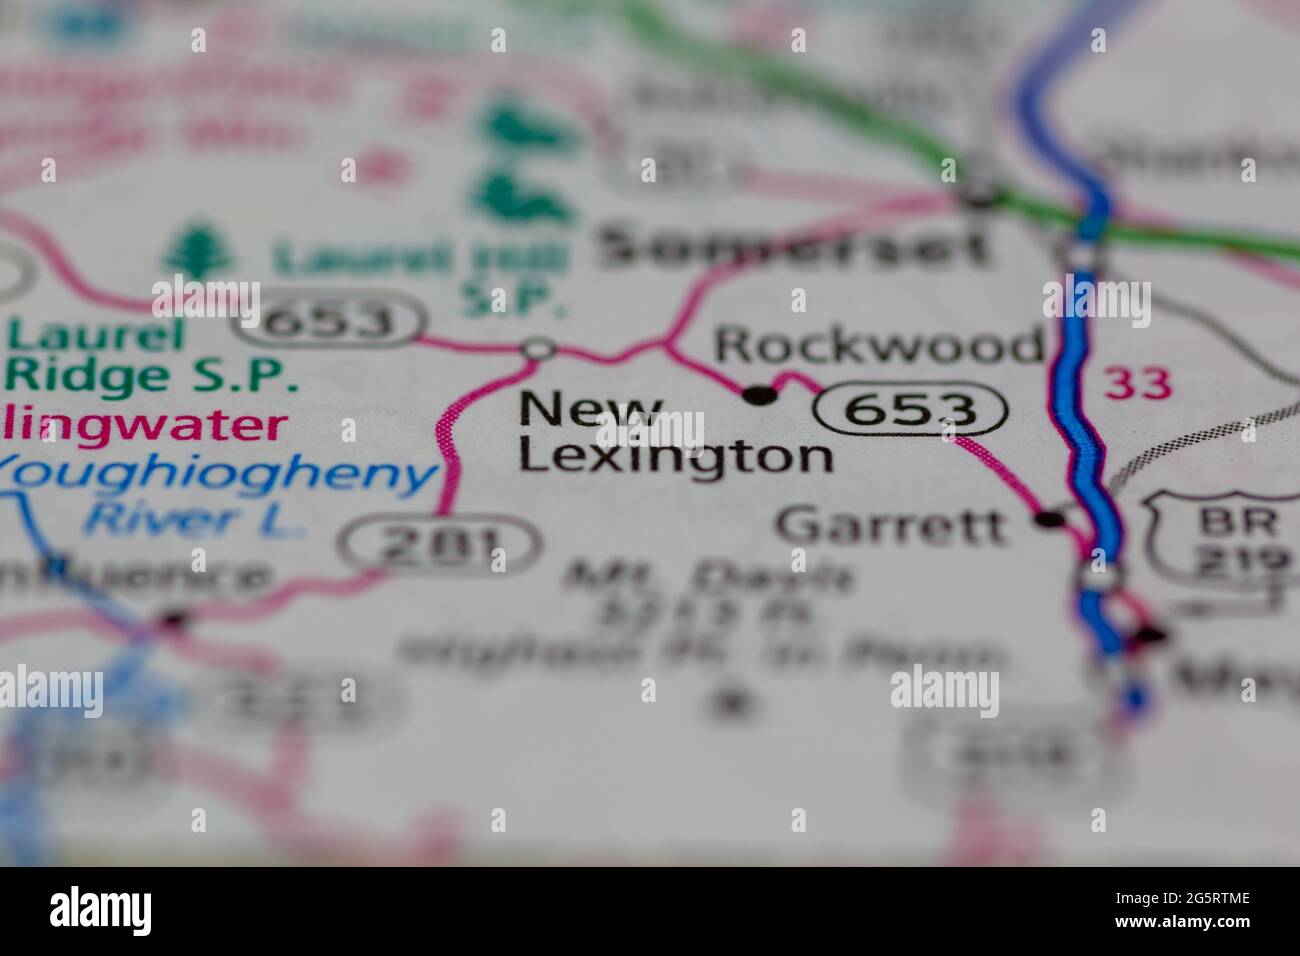 New Lexington Pennsylvania USA montré sur une carte géographique ou une carte routière Banque D'Images